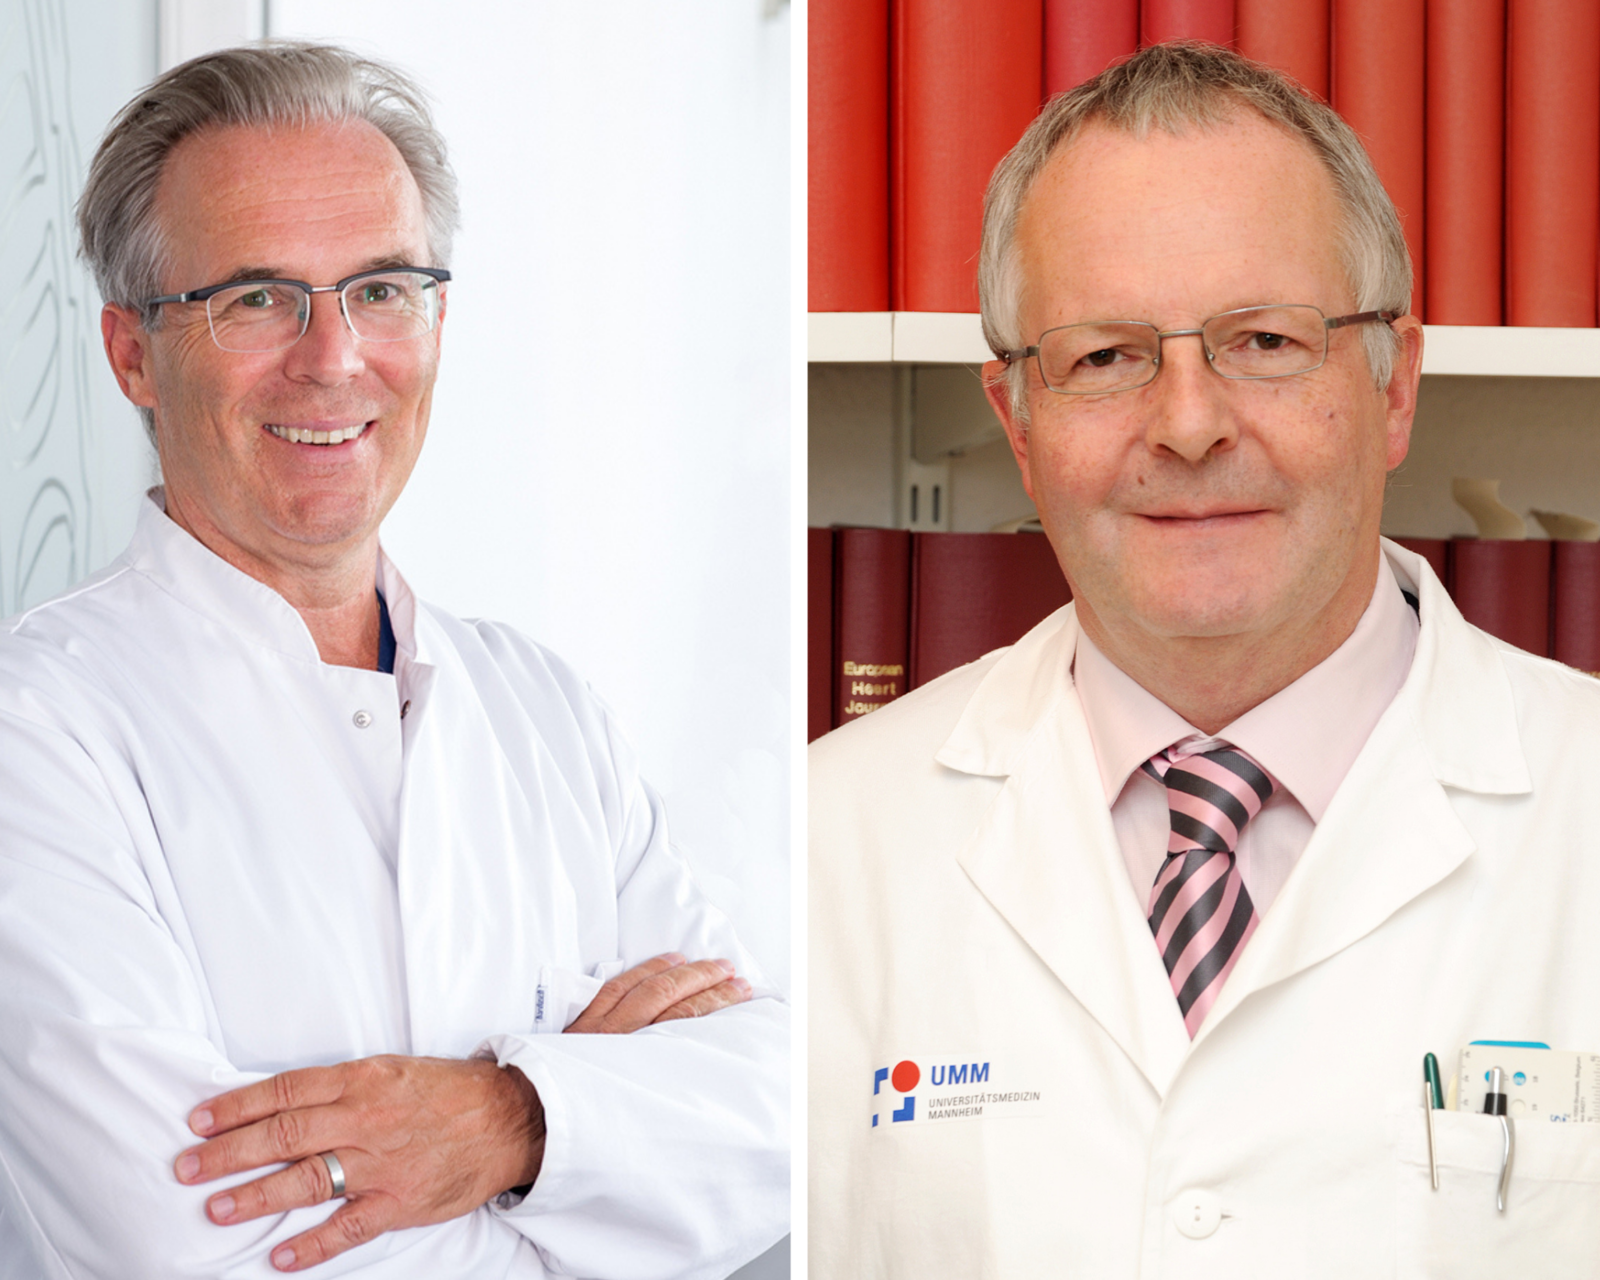 Prof. Stefan Kääb vom LMU Klinikum München und Prof. Martin Borggrefe von der Universitätsmedizin Mannheim.